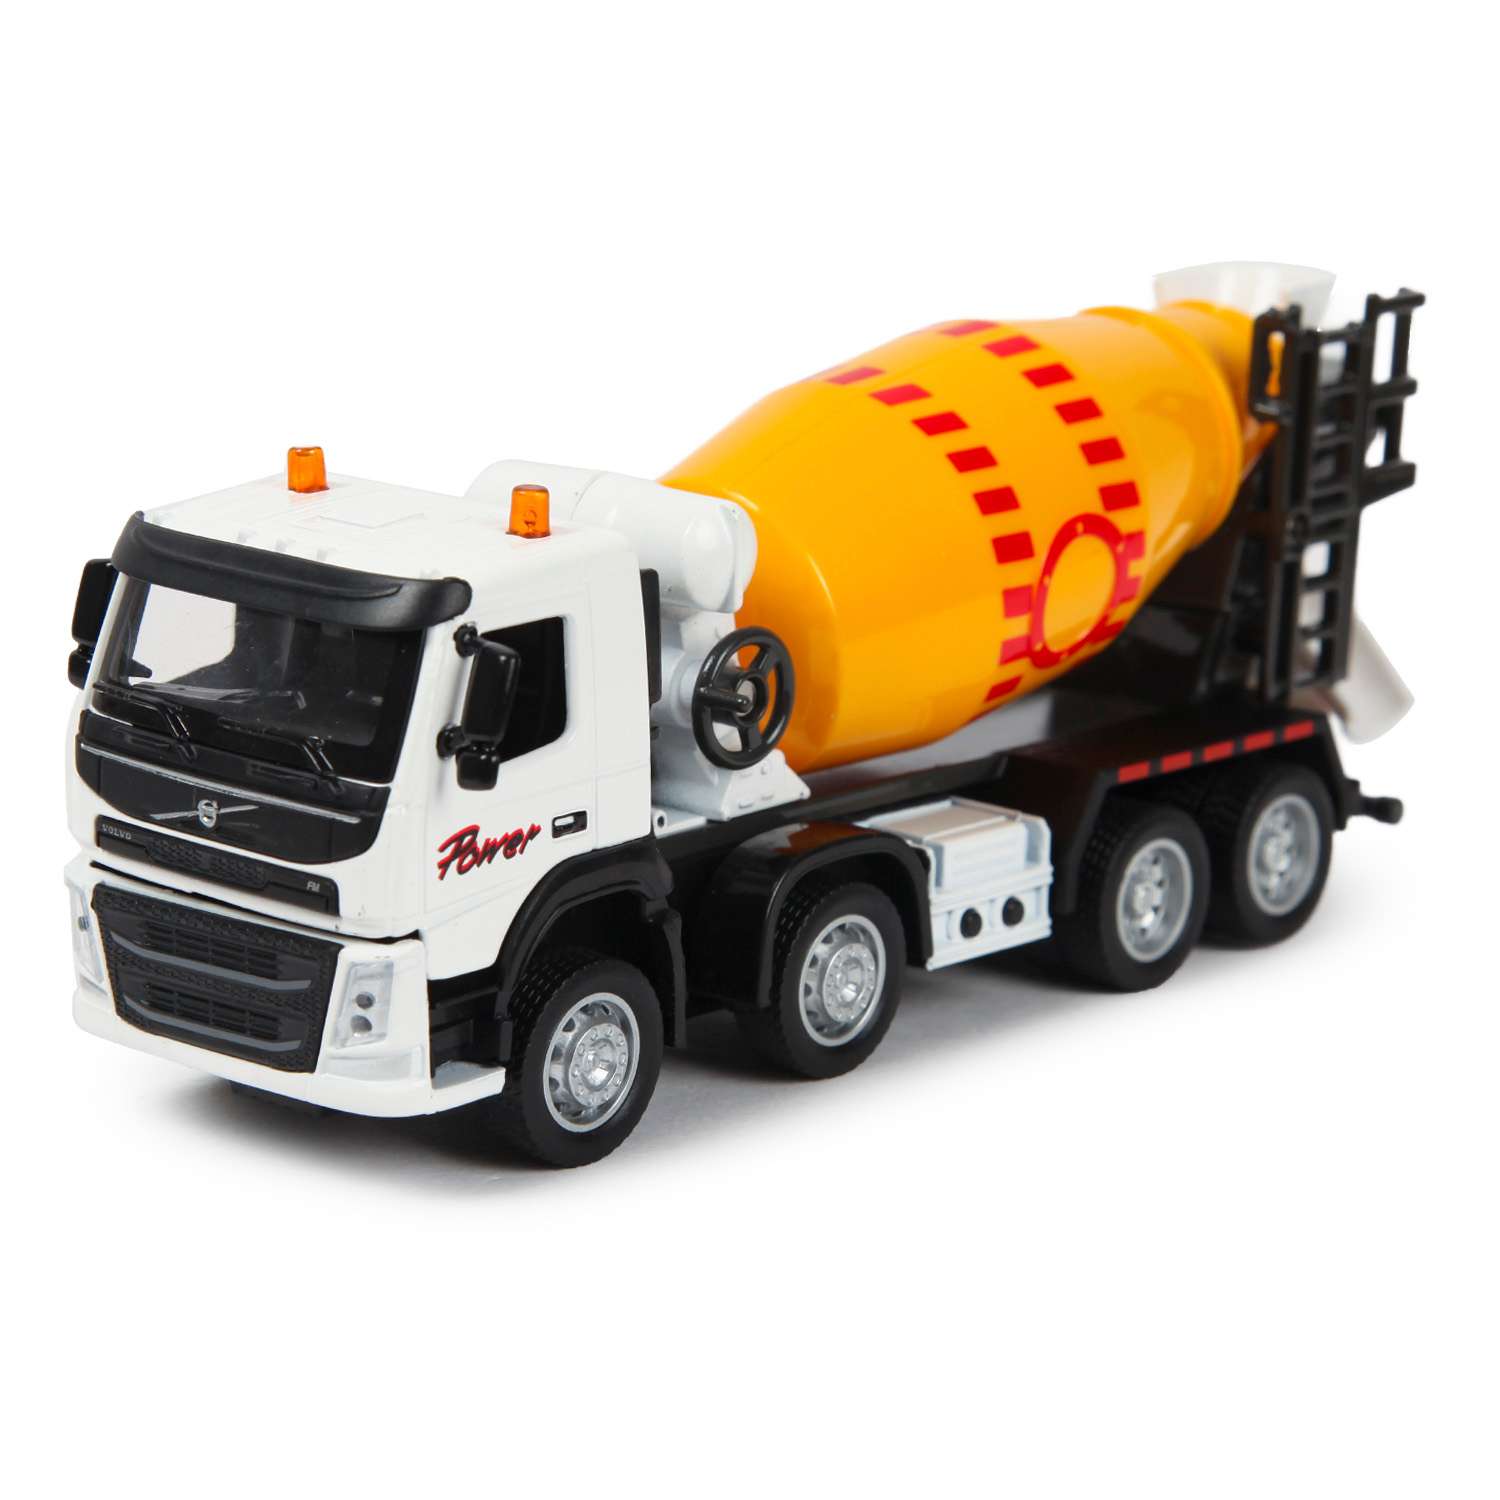 Машина MSZ 1:50 Volvo Cement Mixer Truck Желтая 68383 68383 - фото 1